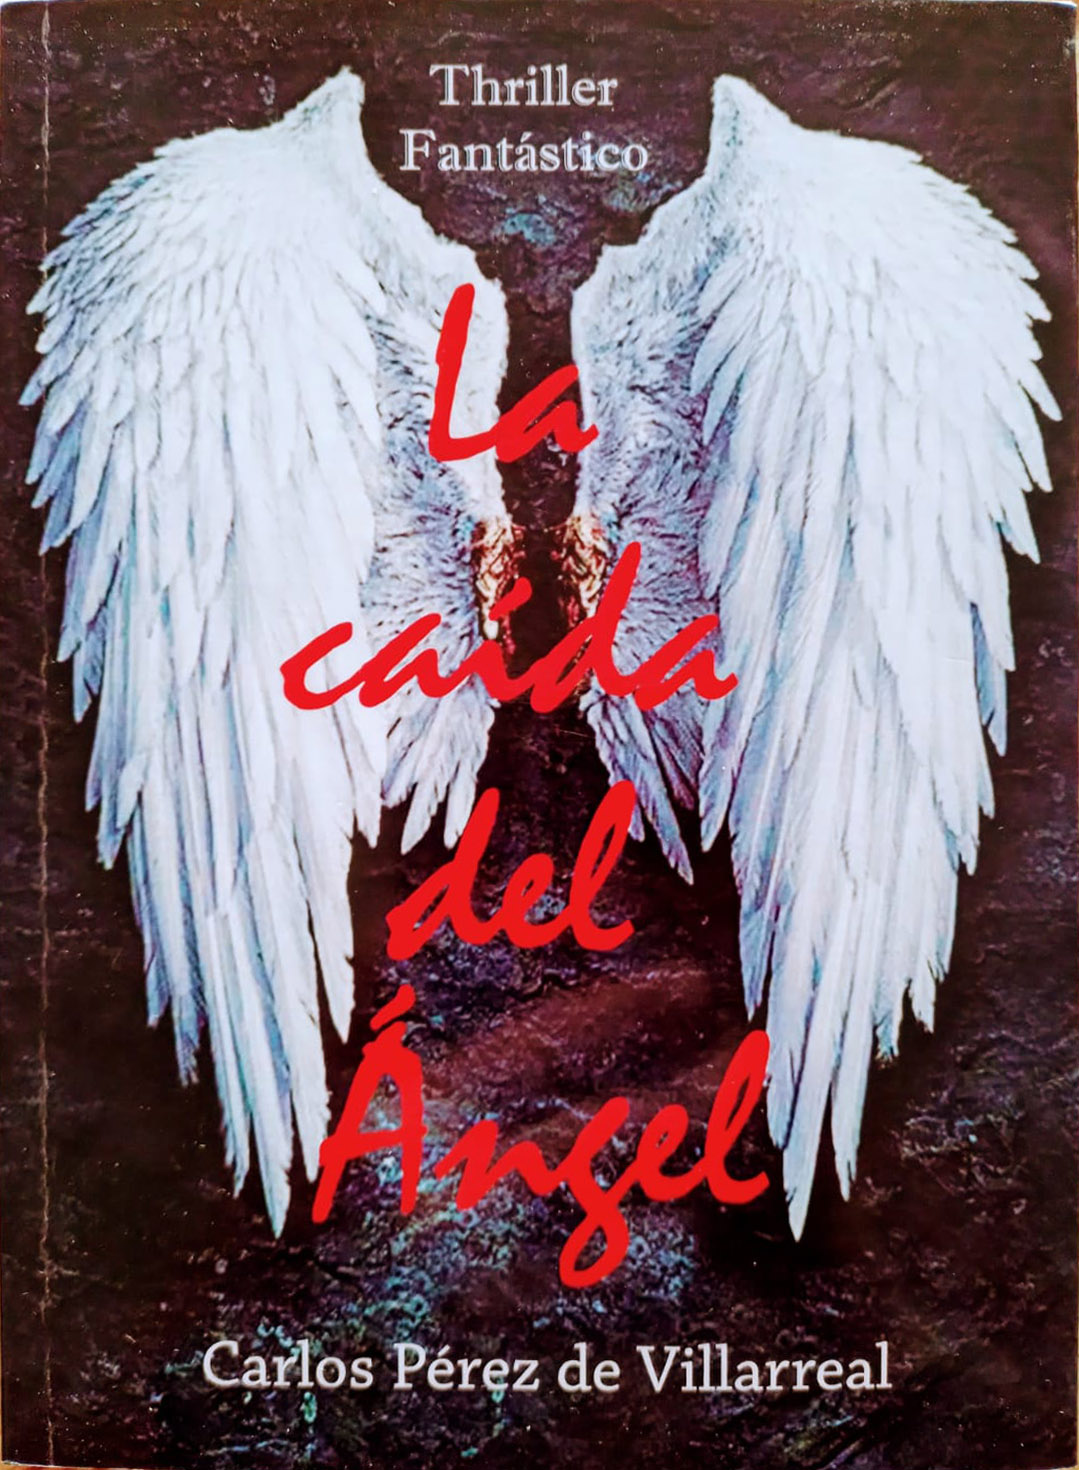 tapa del libro "La caída del Ángel" de Carlos Pérez de Villarreal